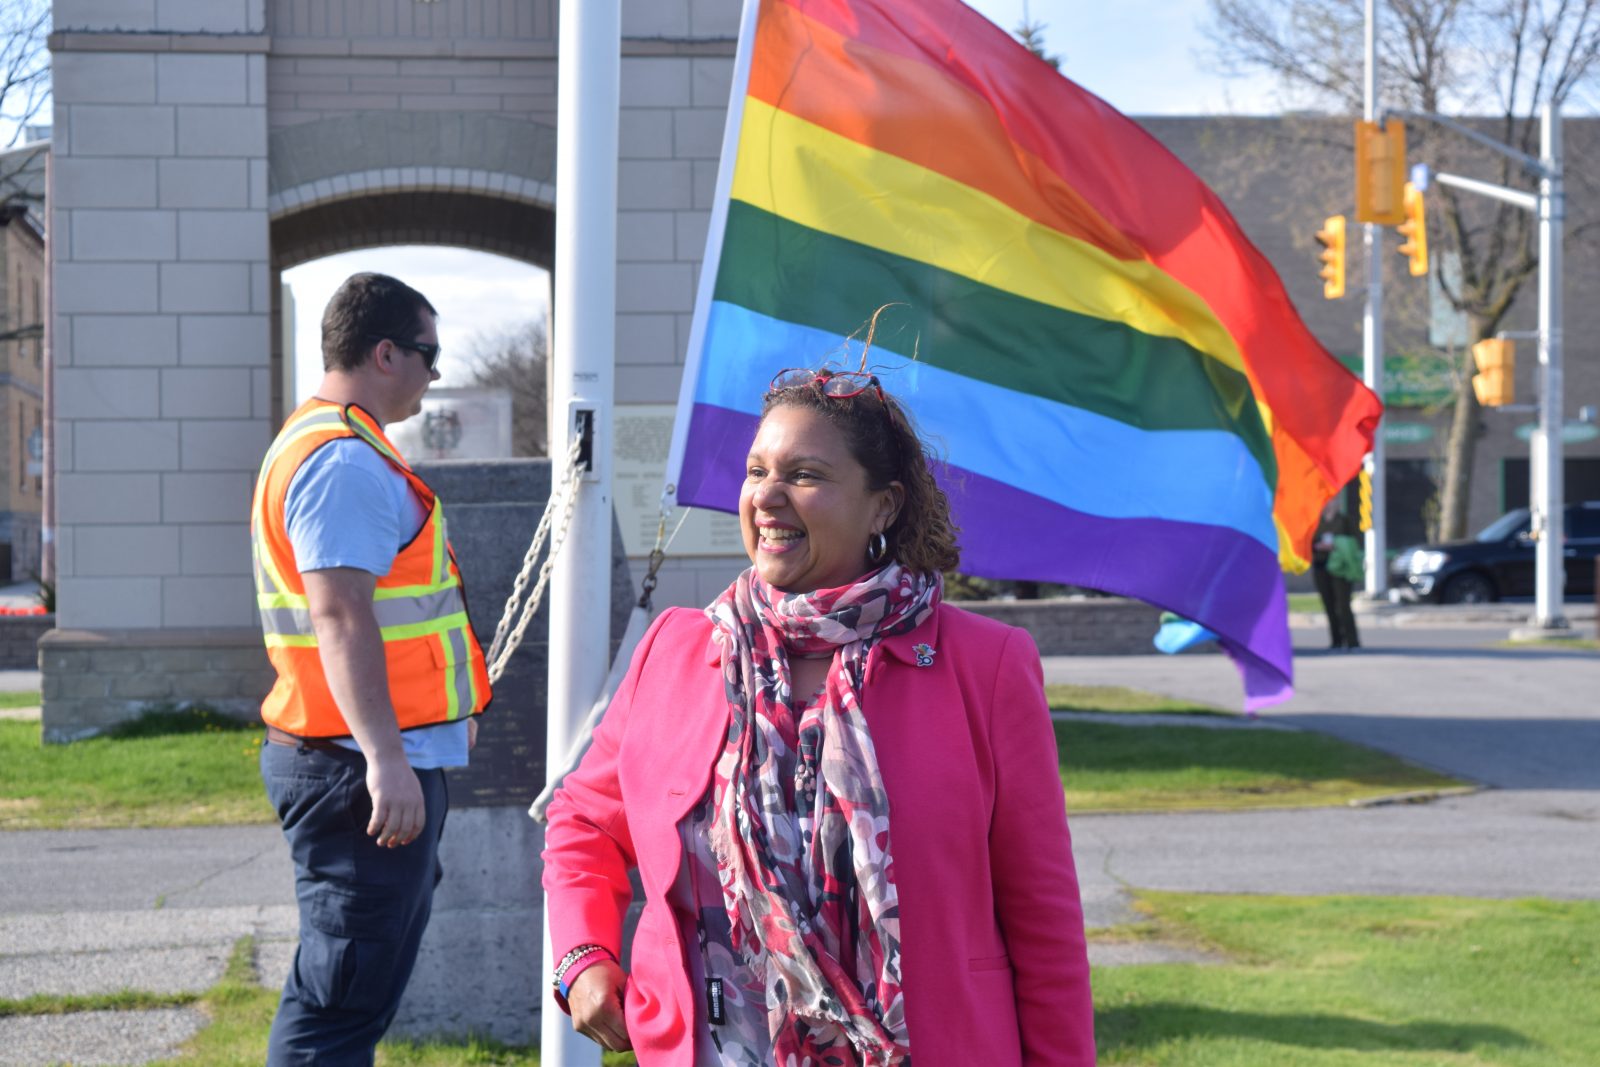 Pride flag flies at Clocktower